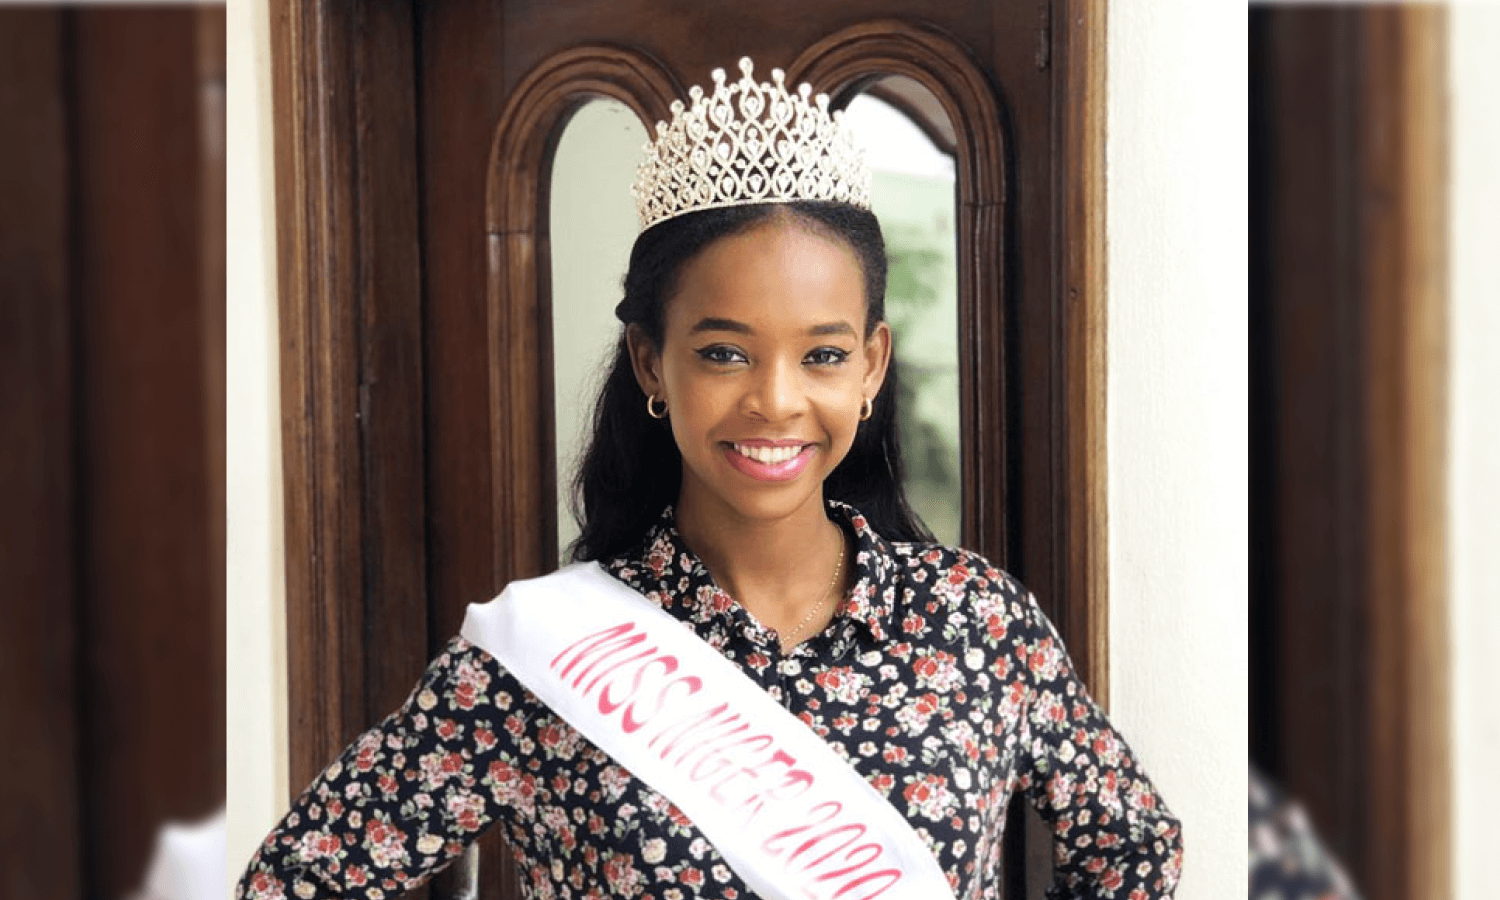 Miriam Abdou Saley Miss 2020